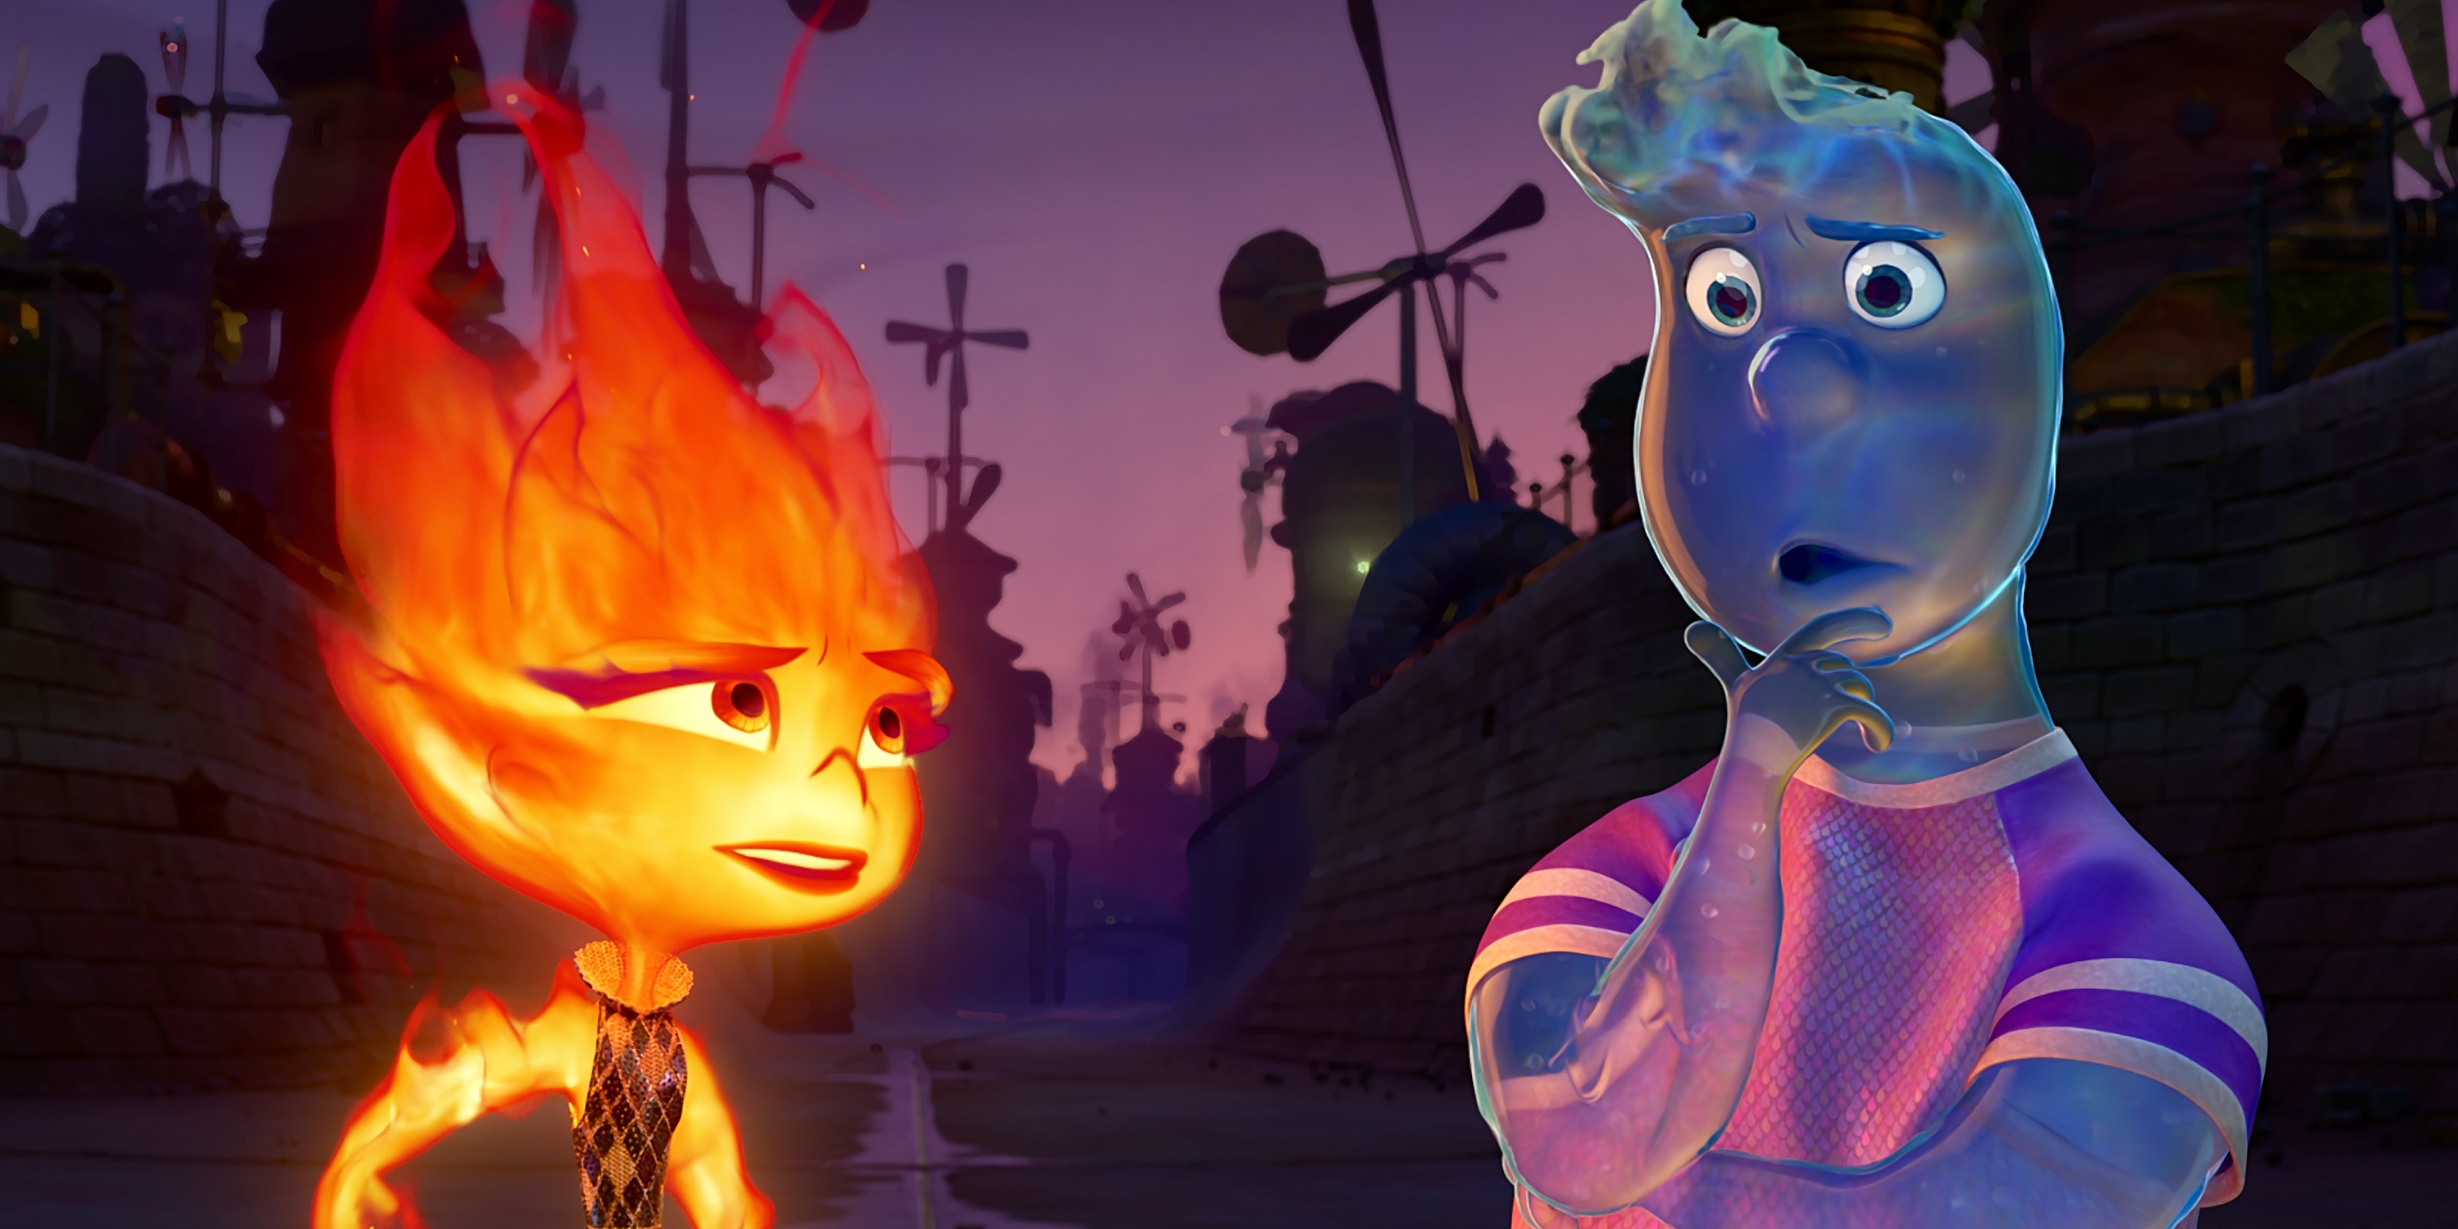 ‘Elemental’ de Pixar, una historia de inmigrantes con la que podríamos conectar